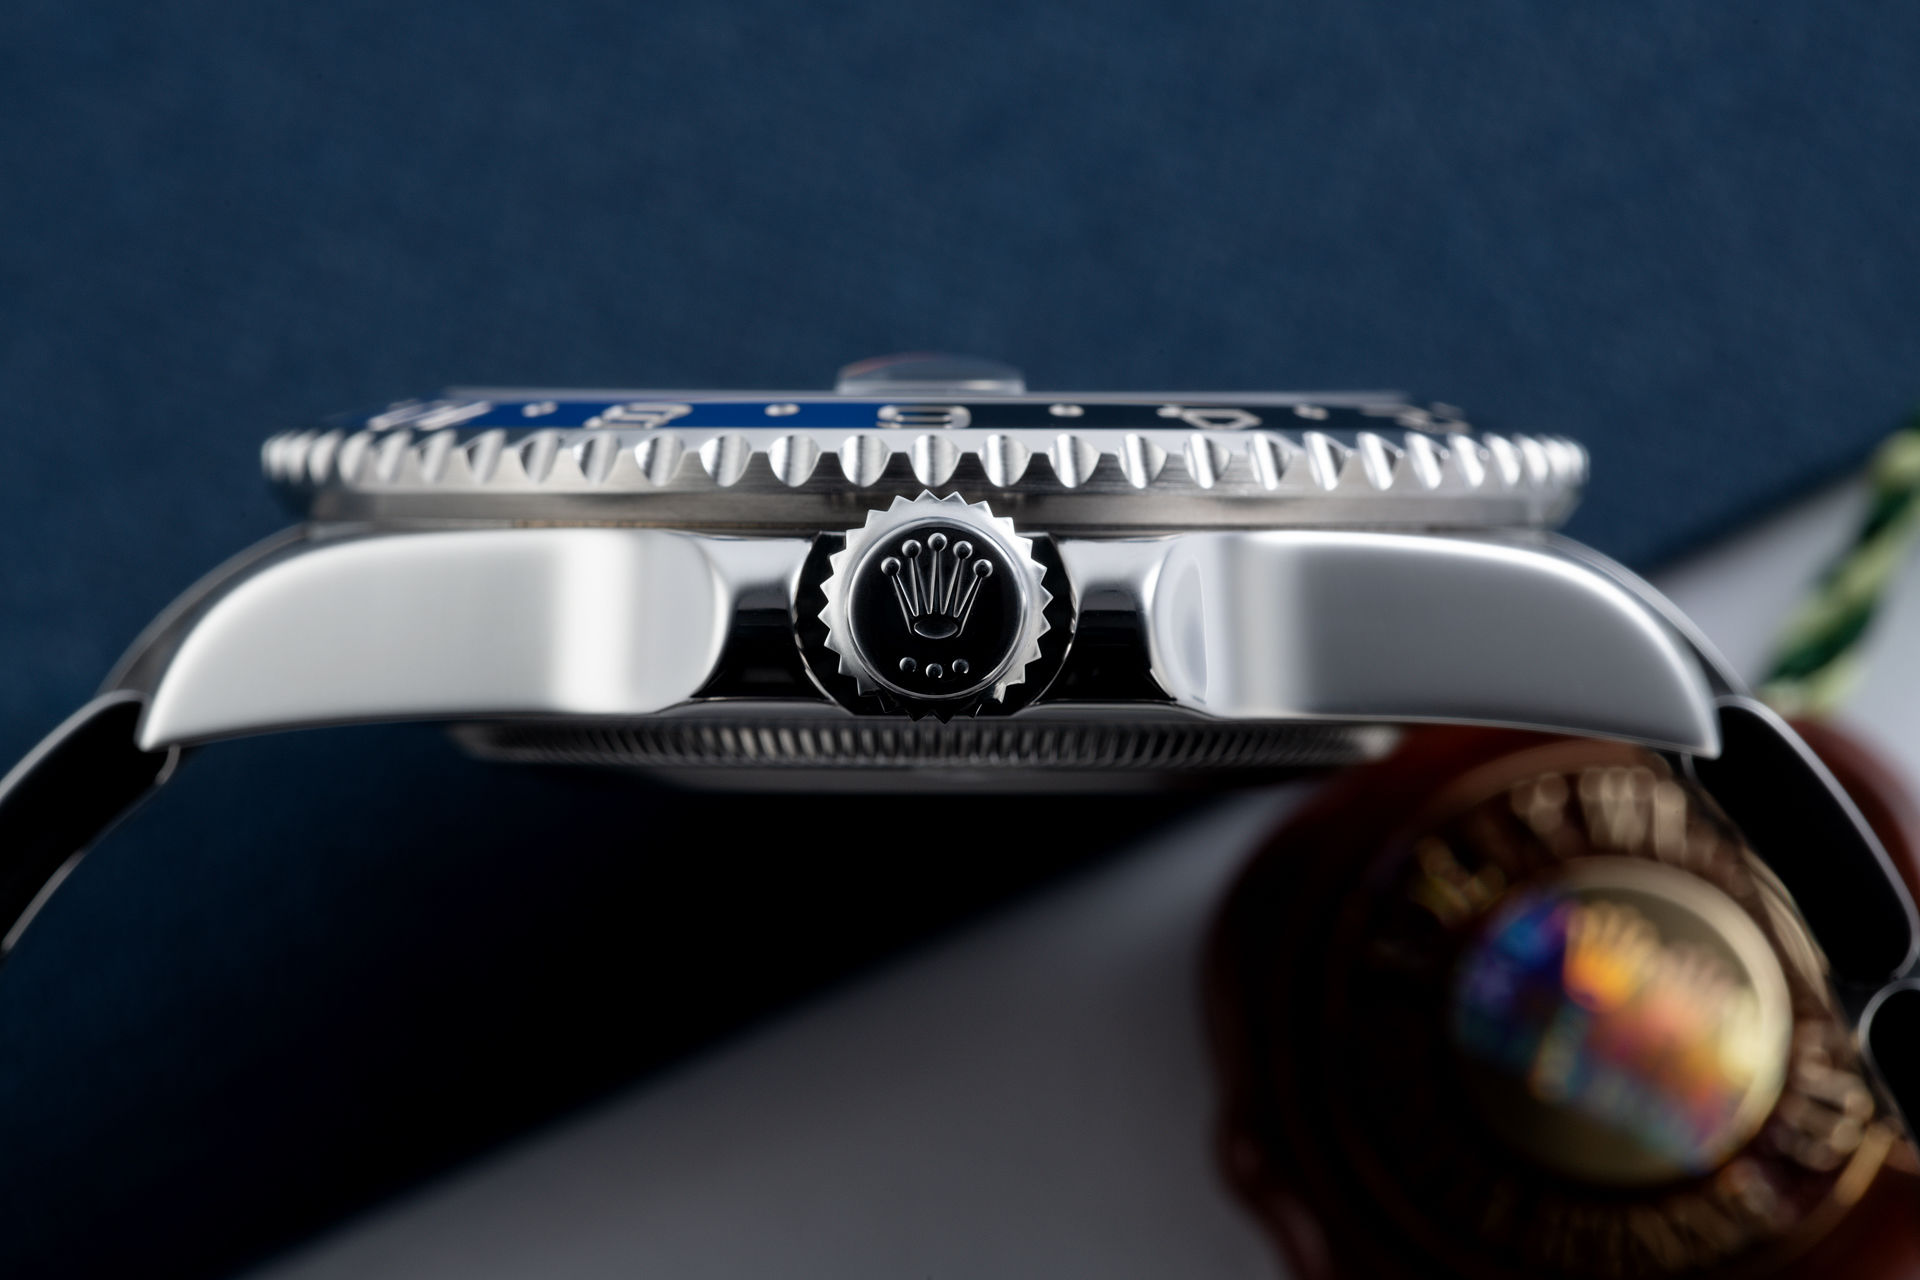 ref 116710BLNR | 'Under Rolex Warranty' | Rolex GMT-Master II